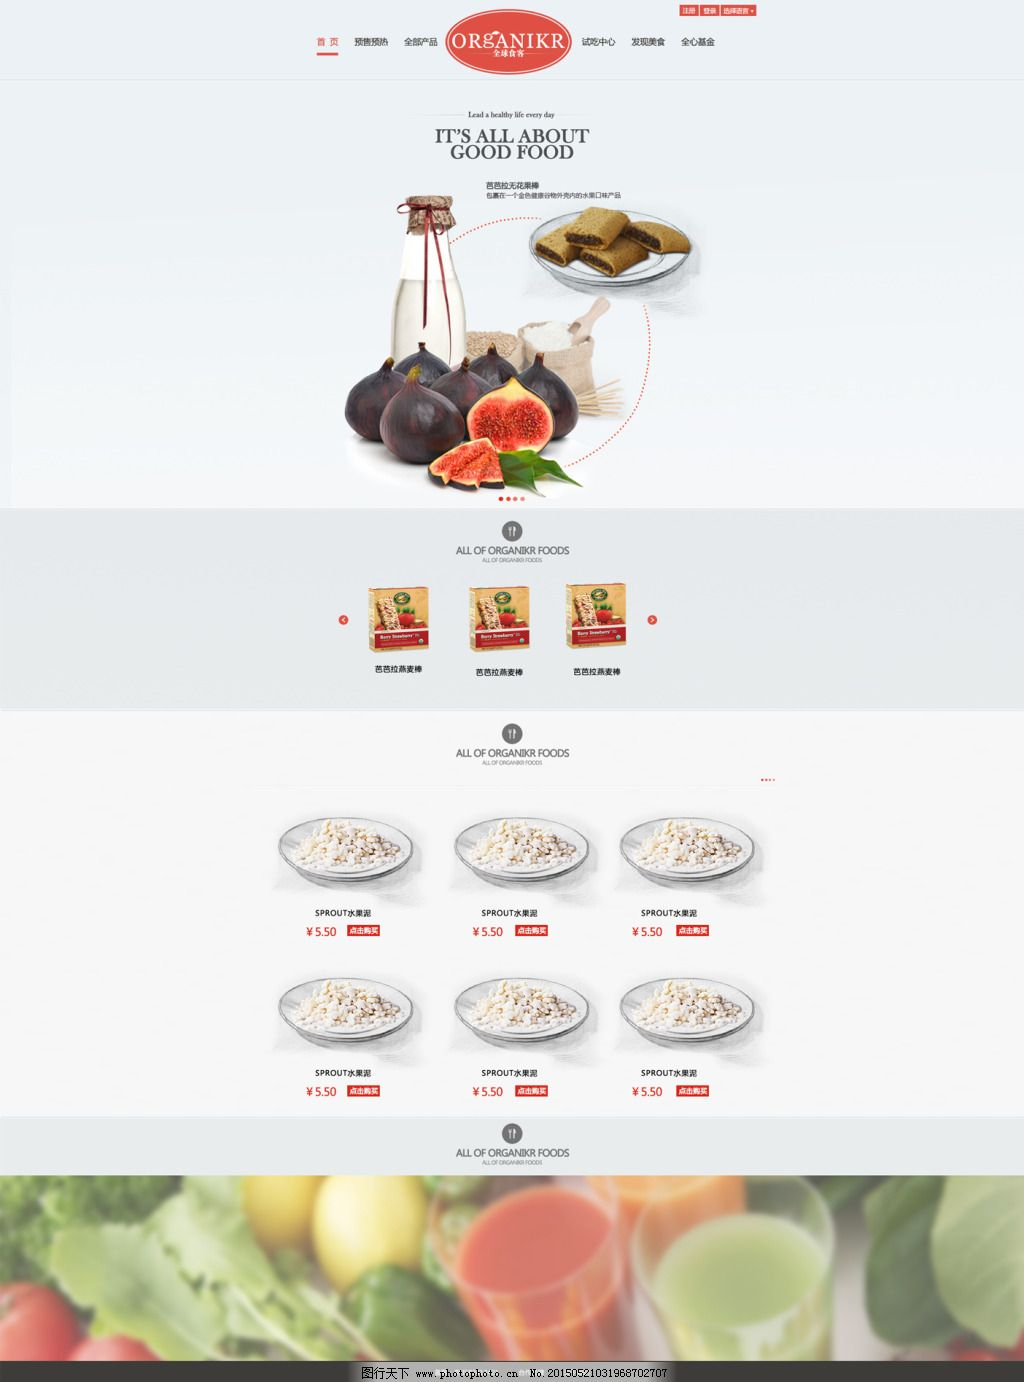 ‘~淘宝零食促销页面平面创作PSD素材图片_食品茶饮_电商图片-  ~’ 的图片